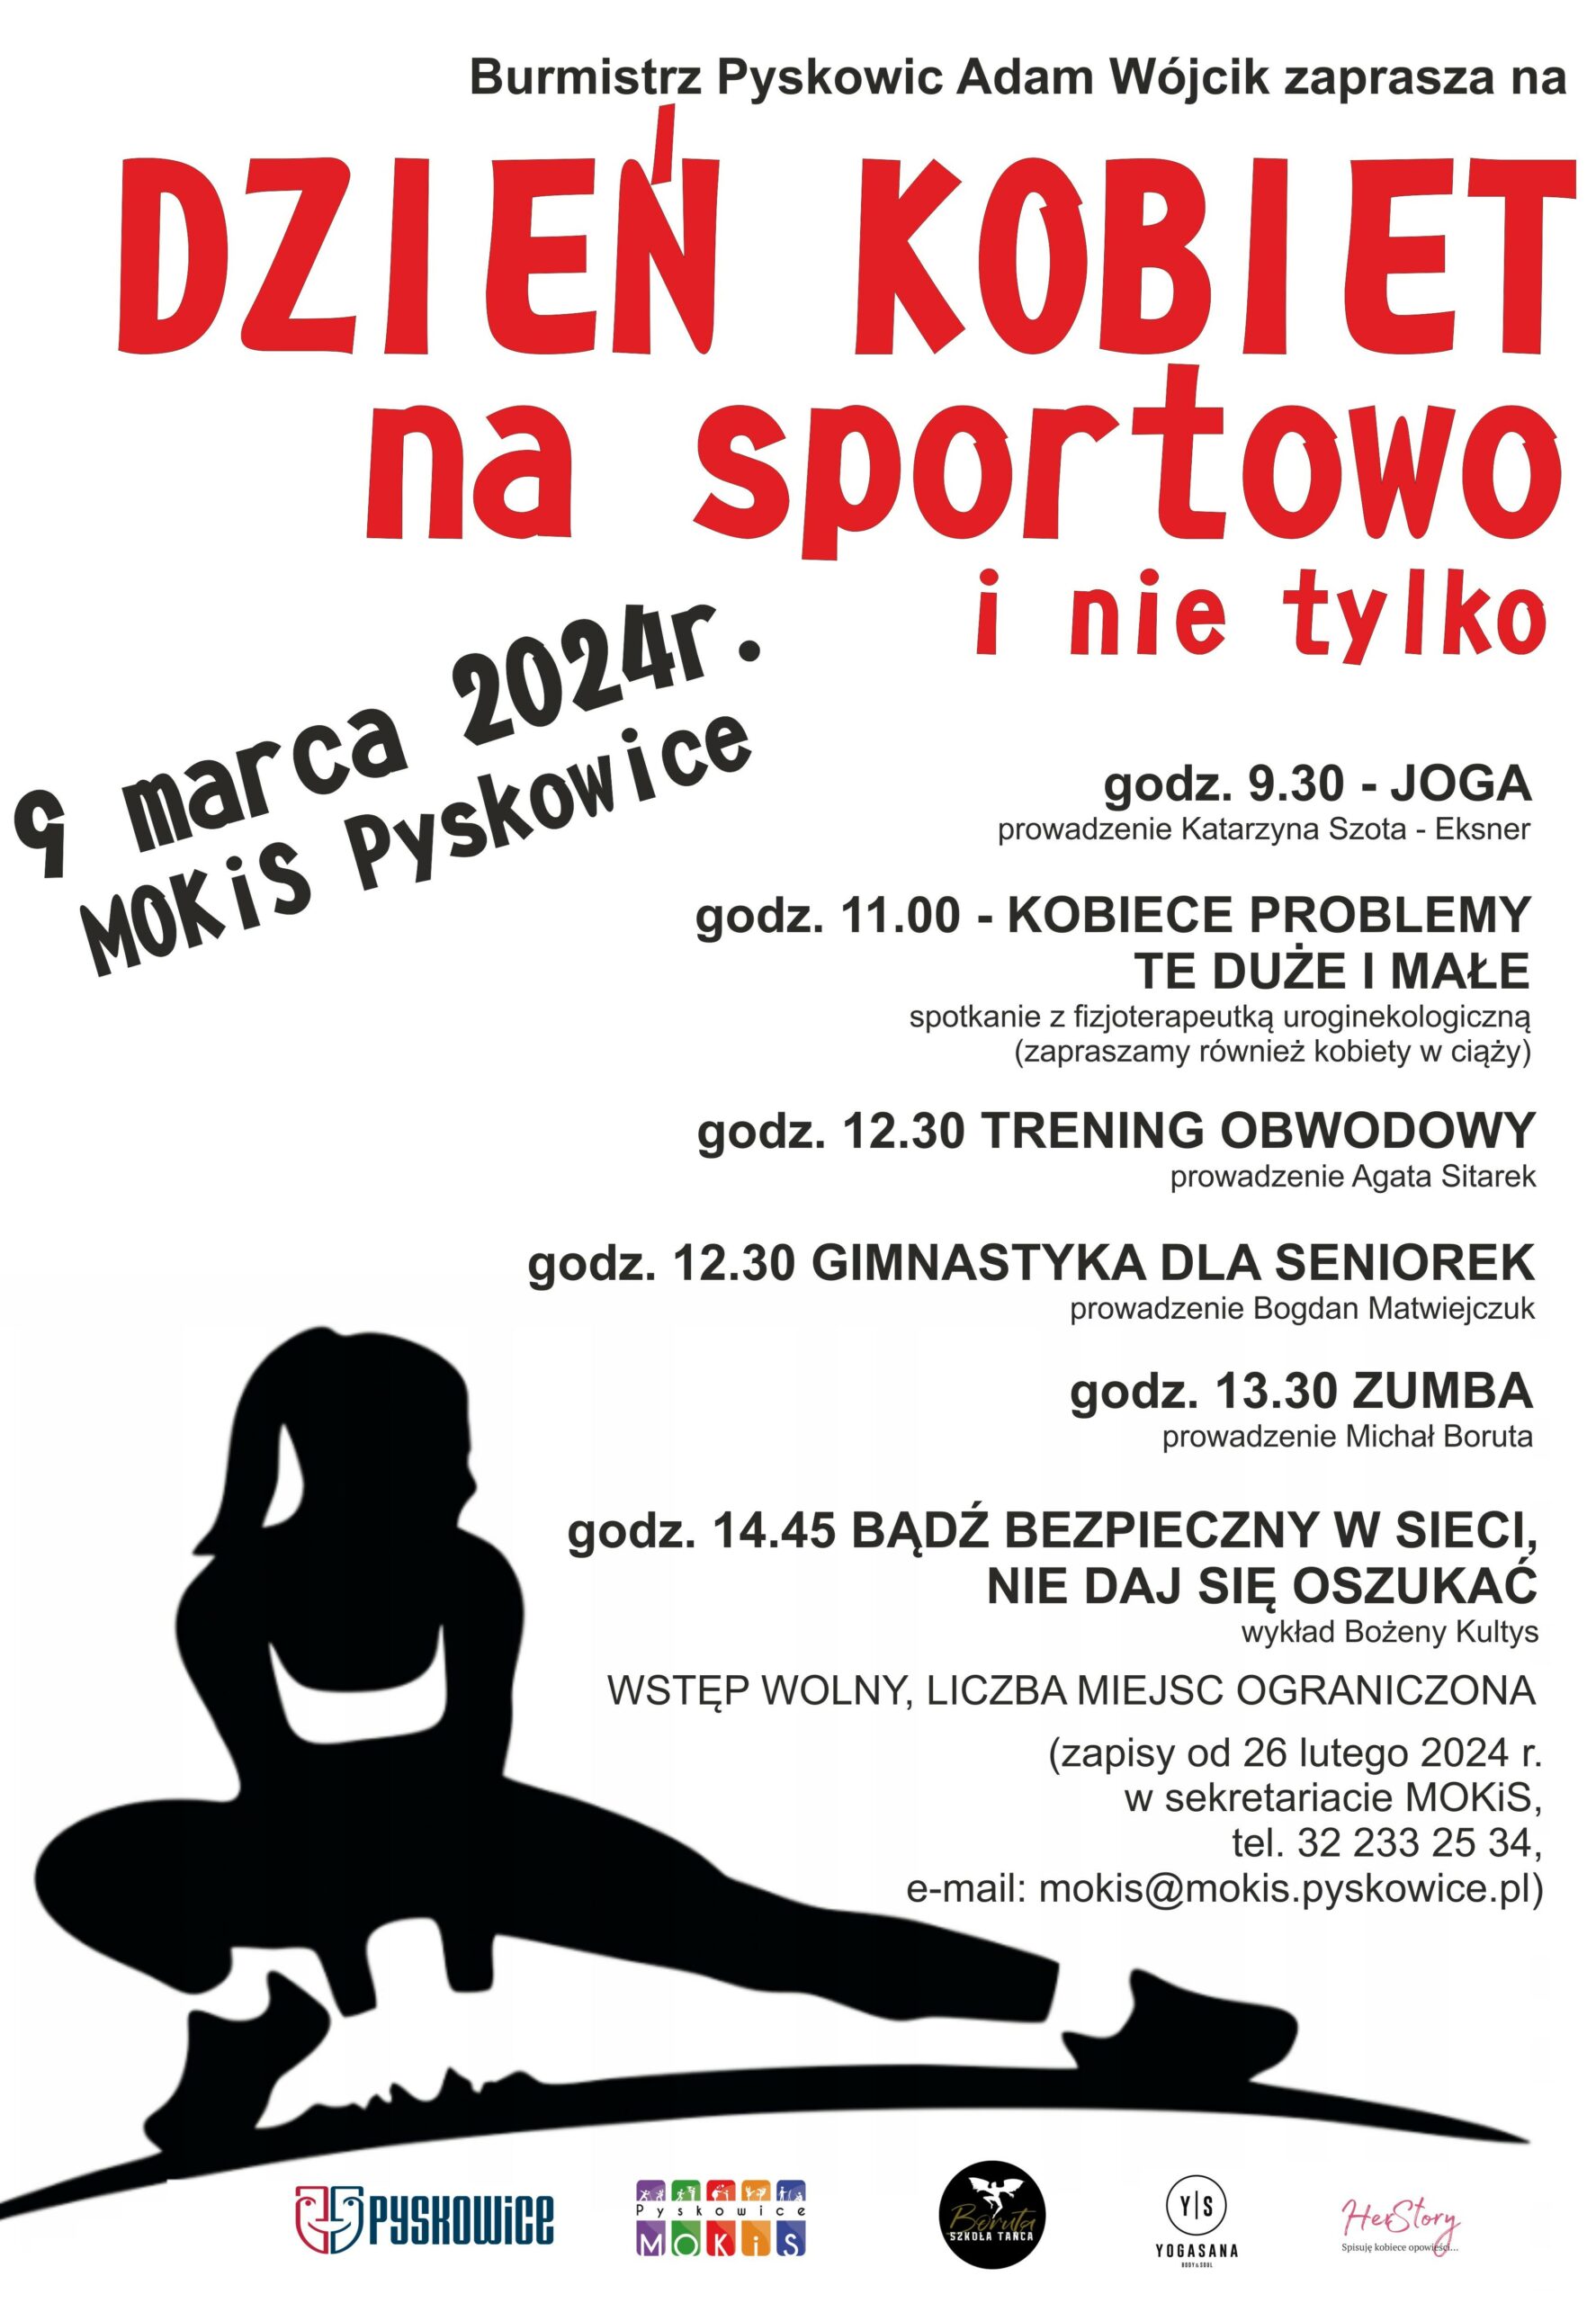 Plakat promujący dzień kobiet na sportowo